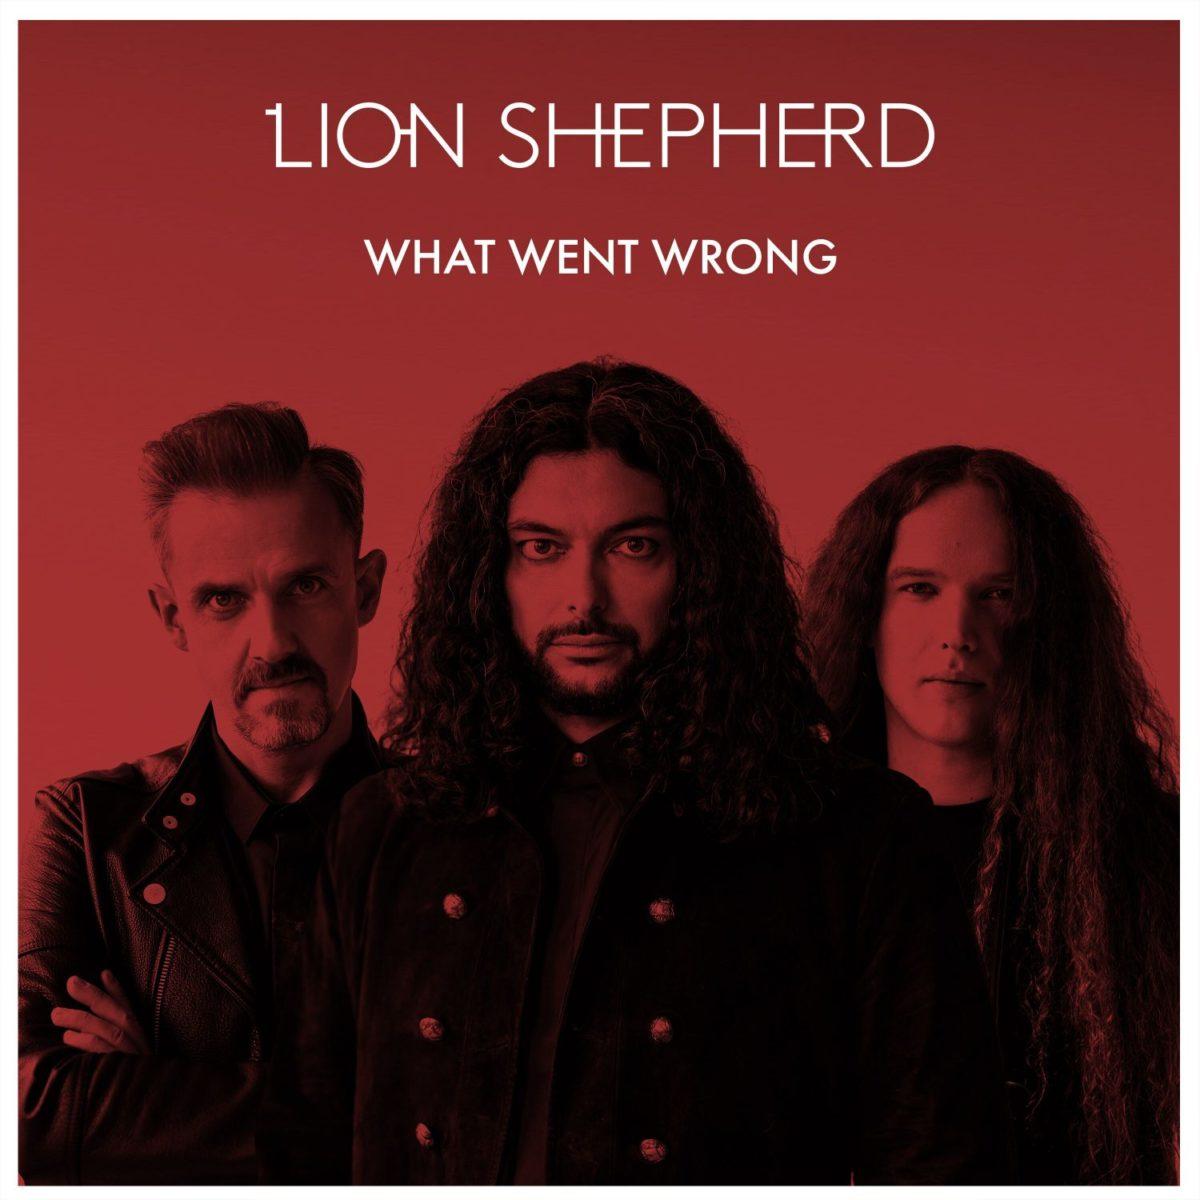 Lion Shepherd - singiel zapowiadający nową płytę